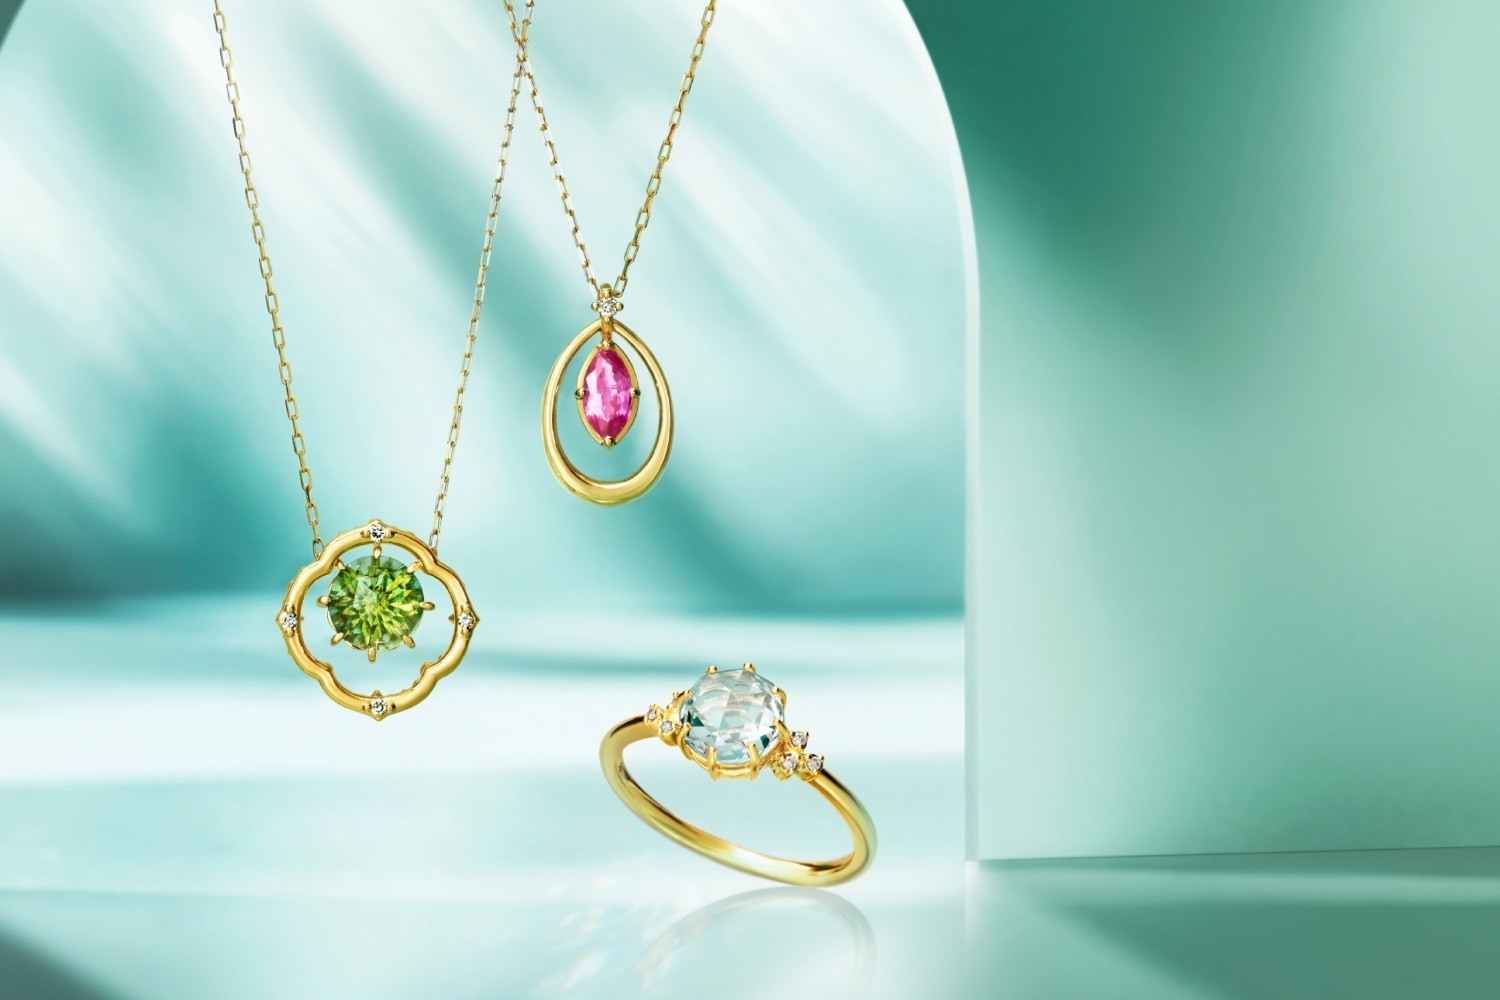 (左から)K10YG Necklace / Peridot / Diamond 59,400円、K18YG Necklace / diamond / Ruby  81,400円、K10YG Ring / White Quartz / Diamond 44,000円